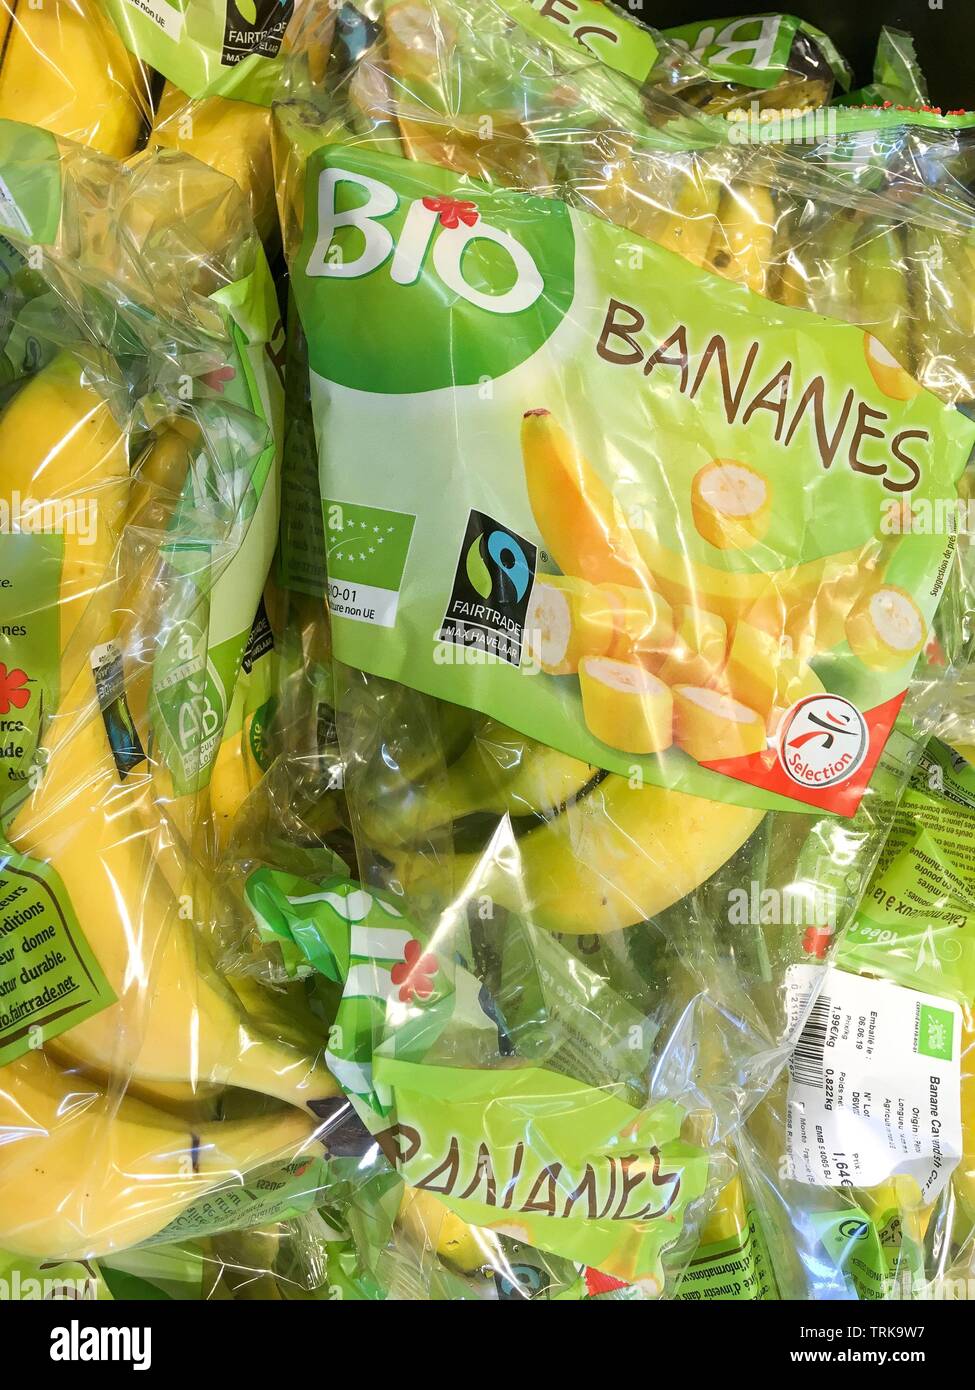 Organic bananas packaged in plastic blister packs, France Stock Photo